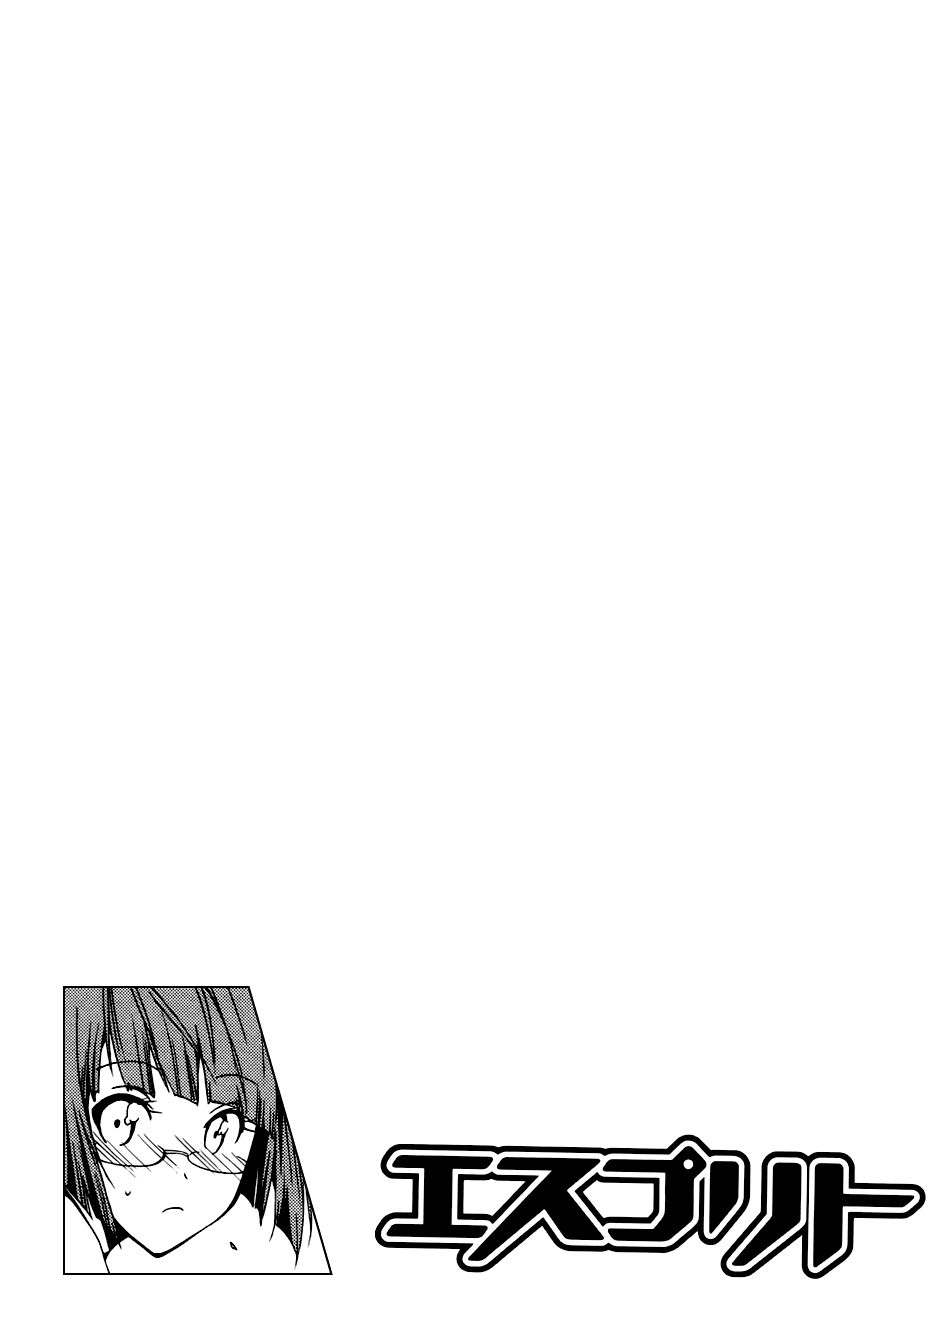 [Manga]: Esprit 0004